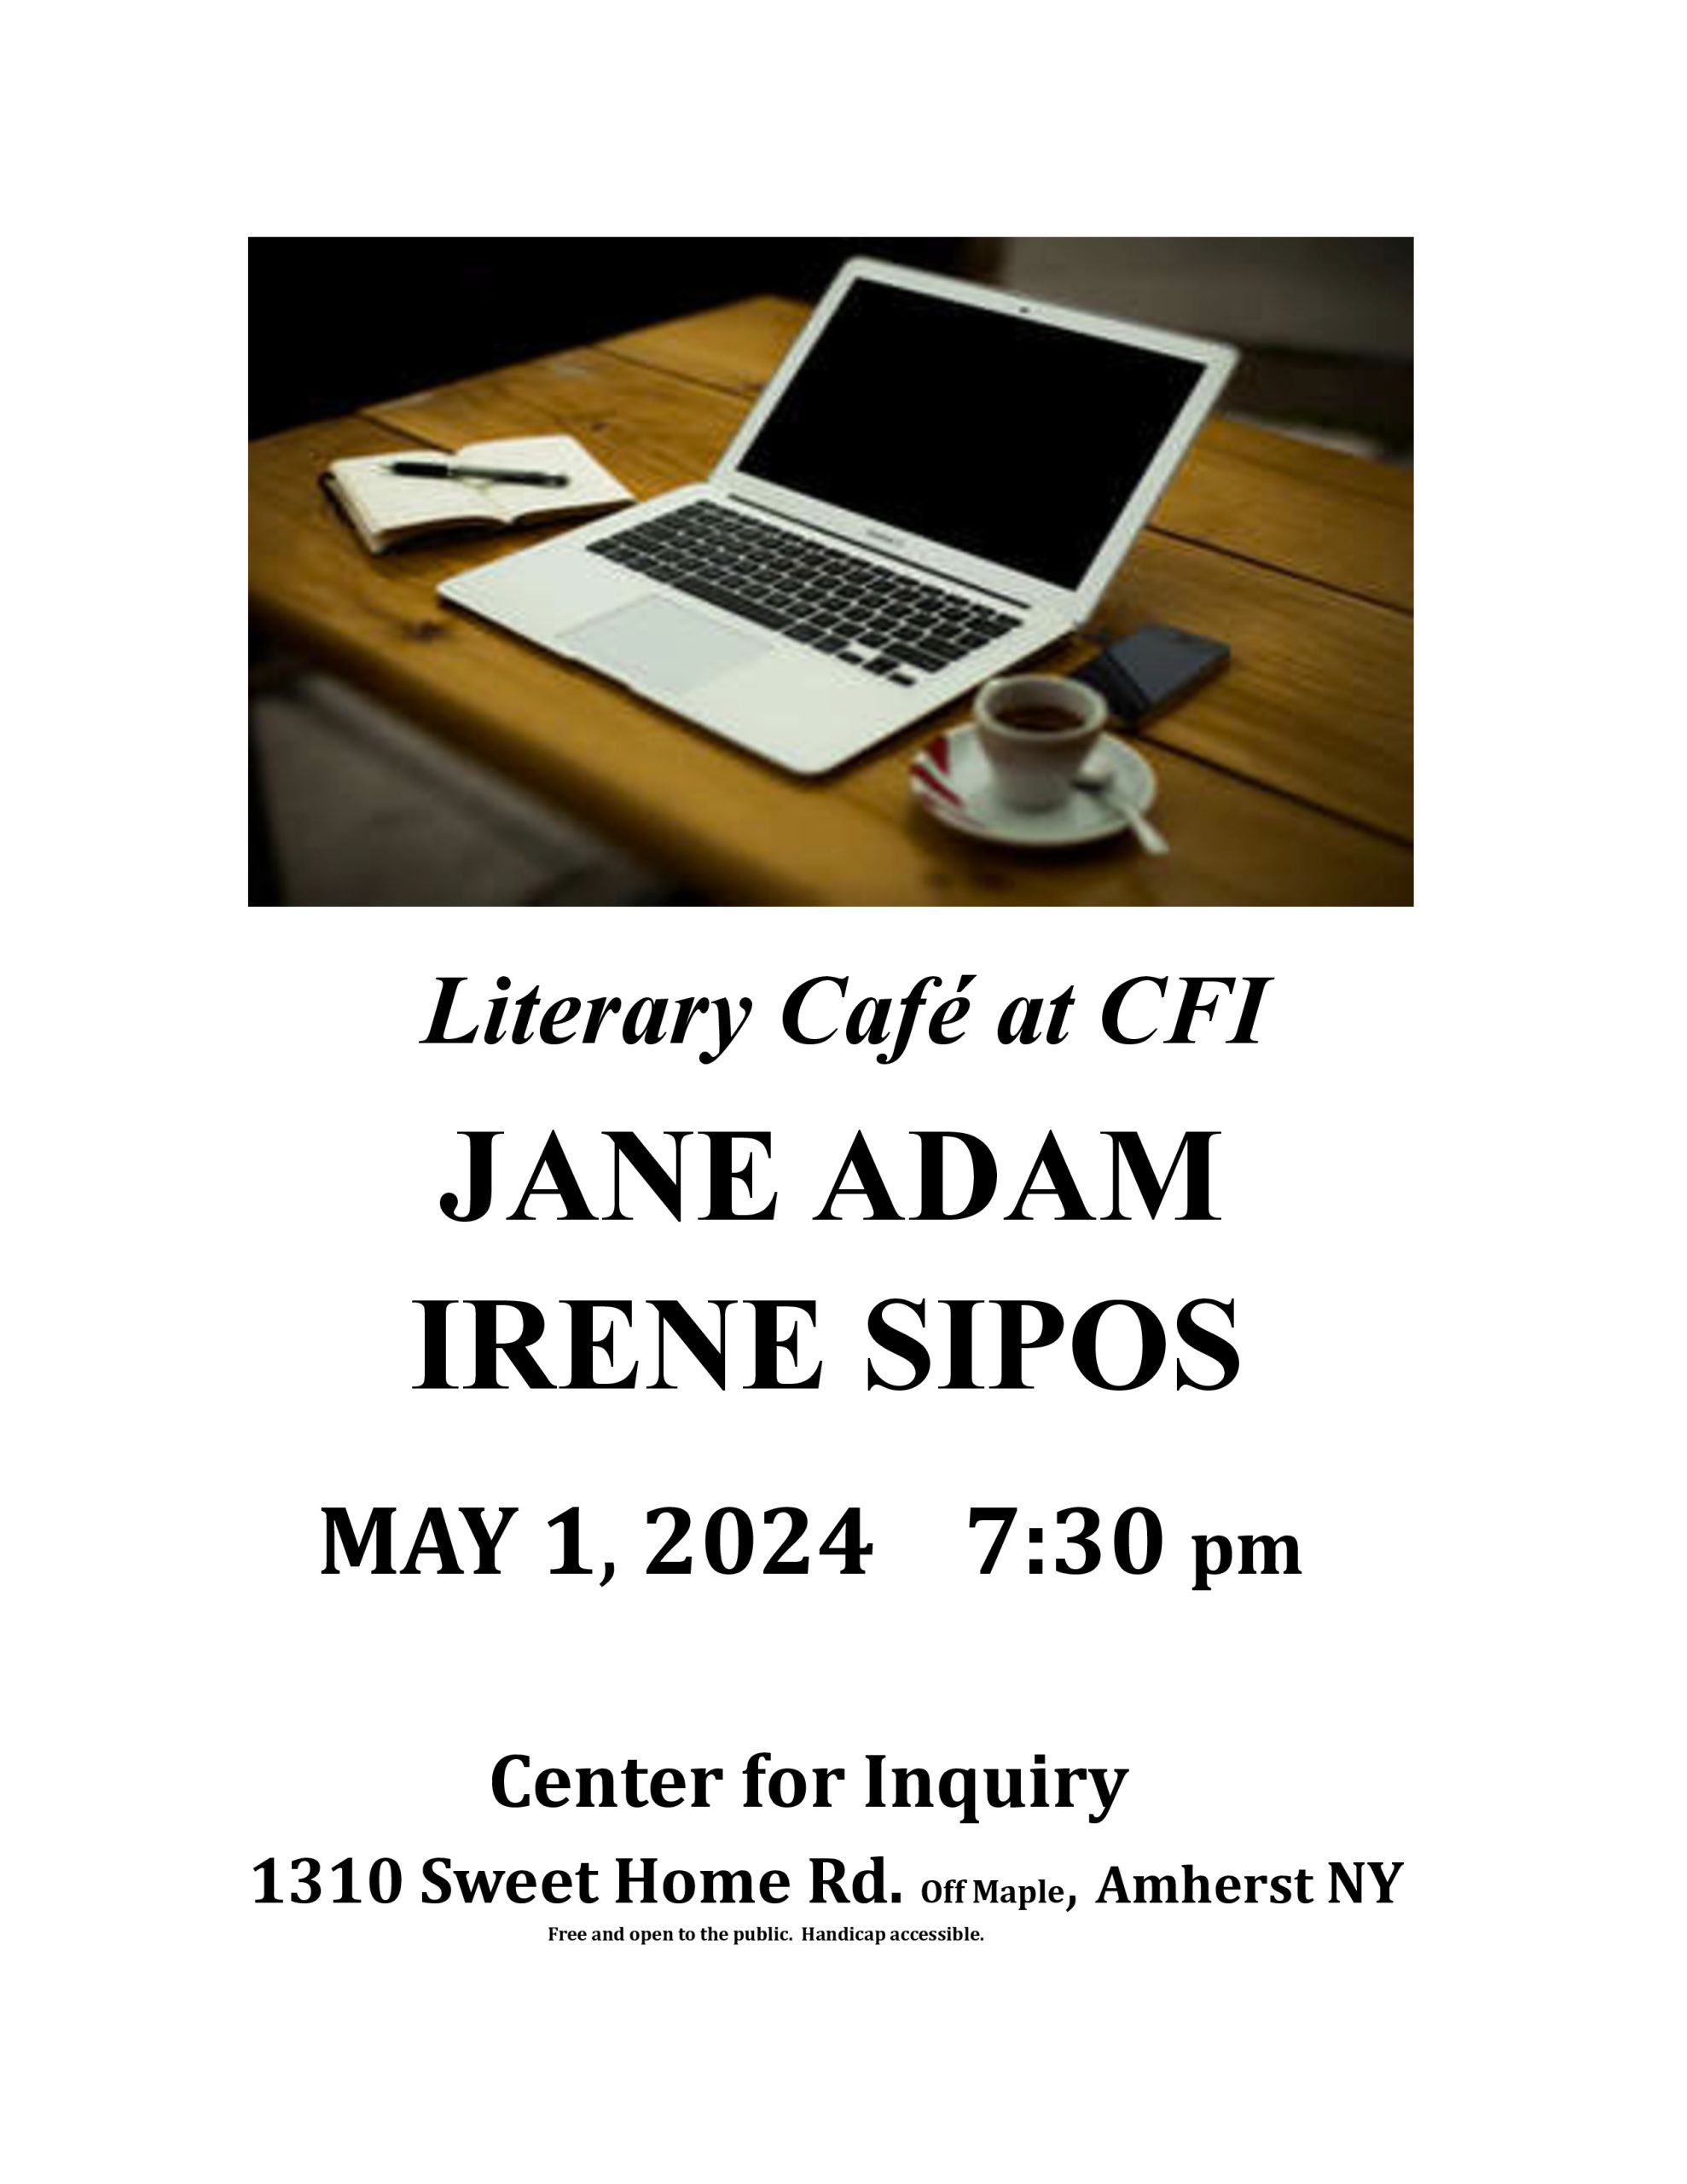 Literary Café at CFI May 1, 2024